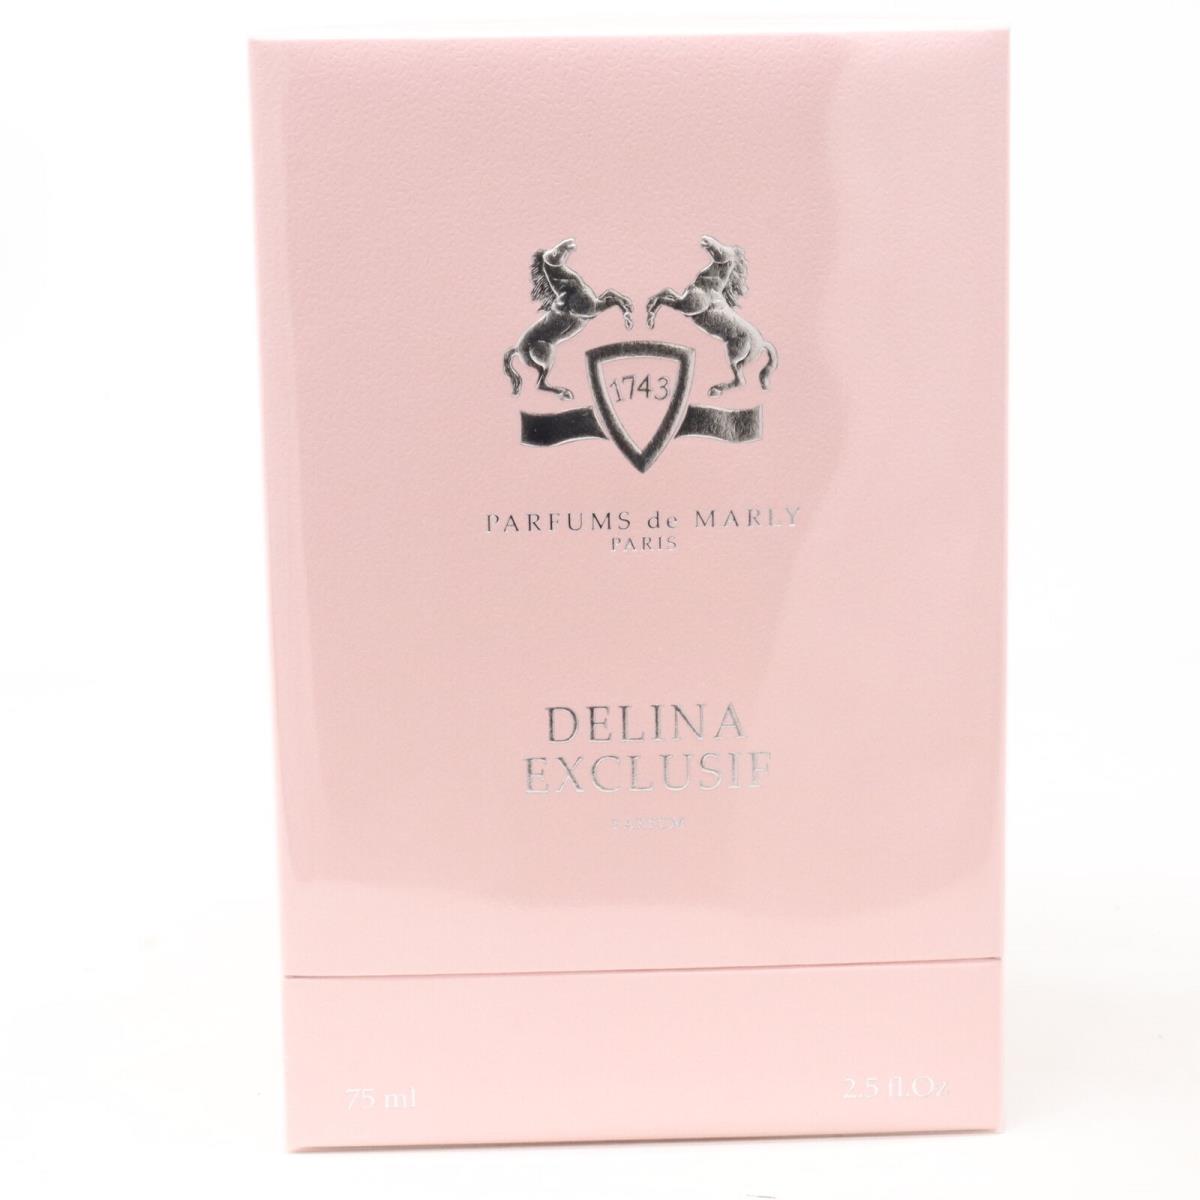 Delina Exclusif by Parfums De Marly Parfum 2.5oz/75ml Spray